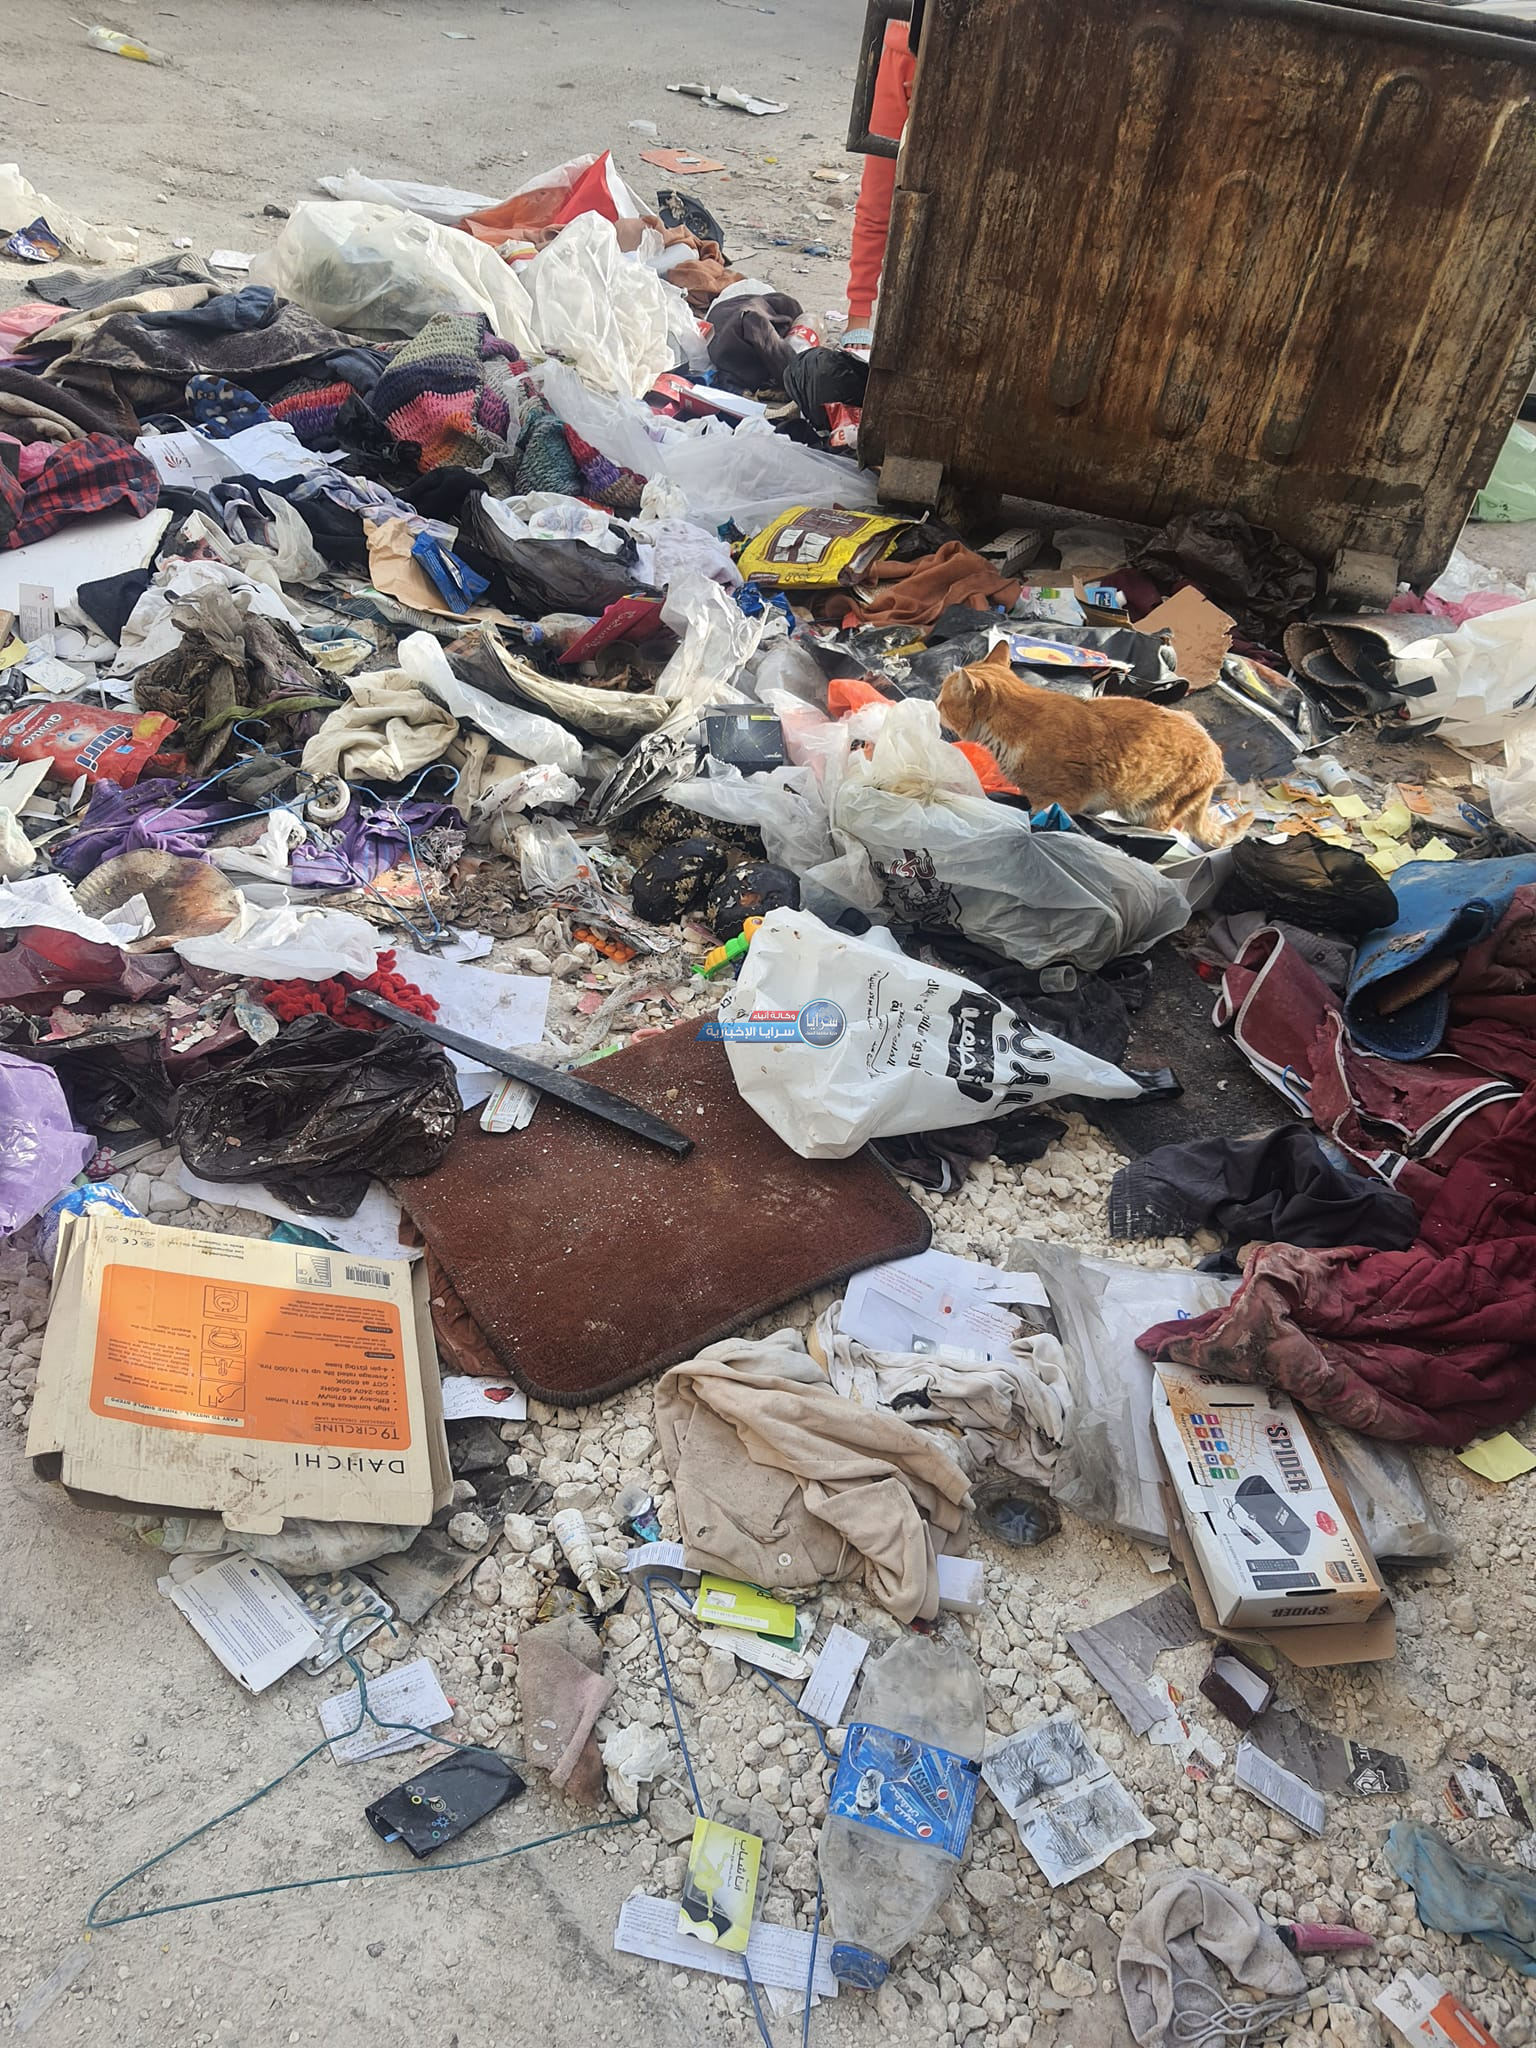 شكوى من انعدام النظافة في شارع بولاد بالزرقاء والبلدية ترد تم ازالة النفايات 